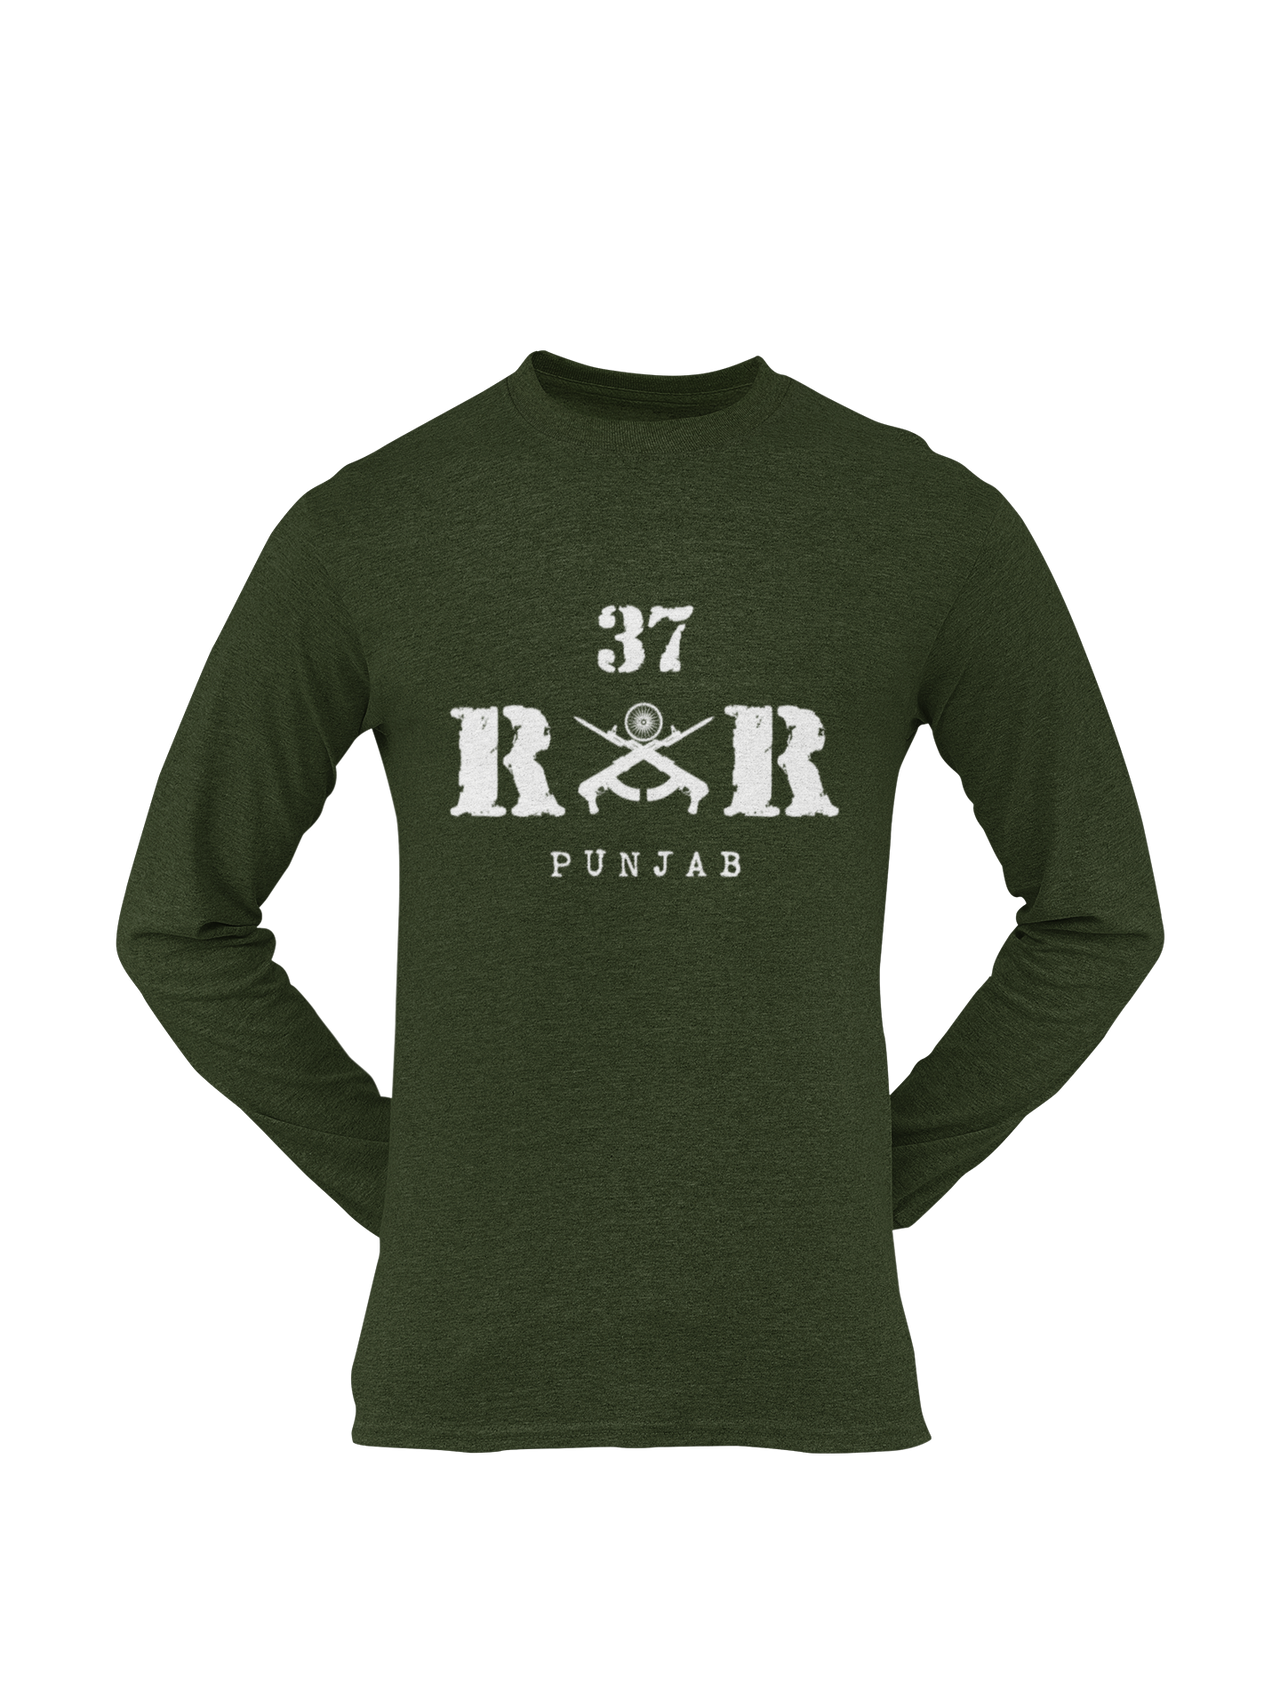 Rashtriya Rifles T-shirt - 37 RR Punjab (Men)